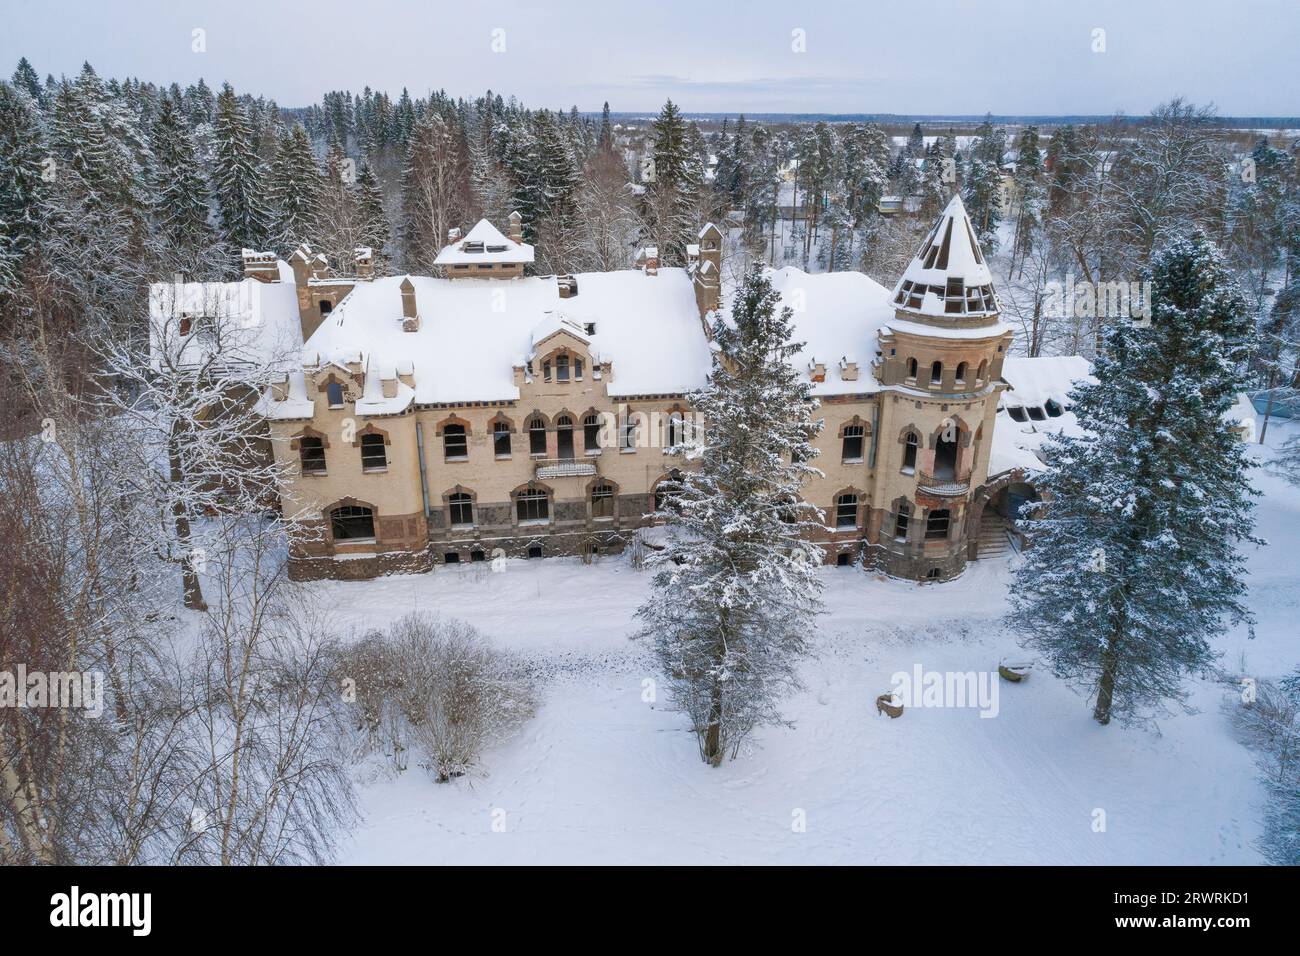 Antica residenza abbandonata della tenuta Eliseev (1912) in un paesaggio invernale (fotografia aerea). Belogorka, regione di Leningrado. Russia Foto Stock